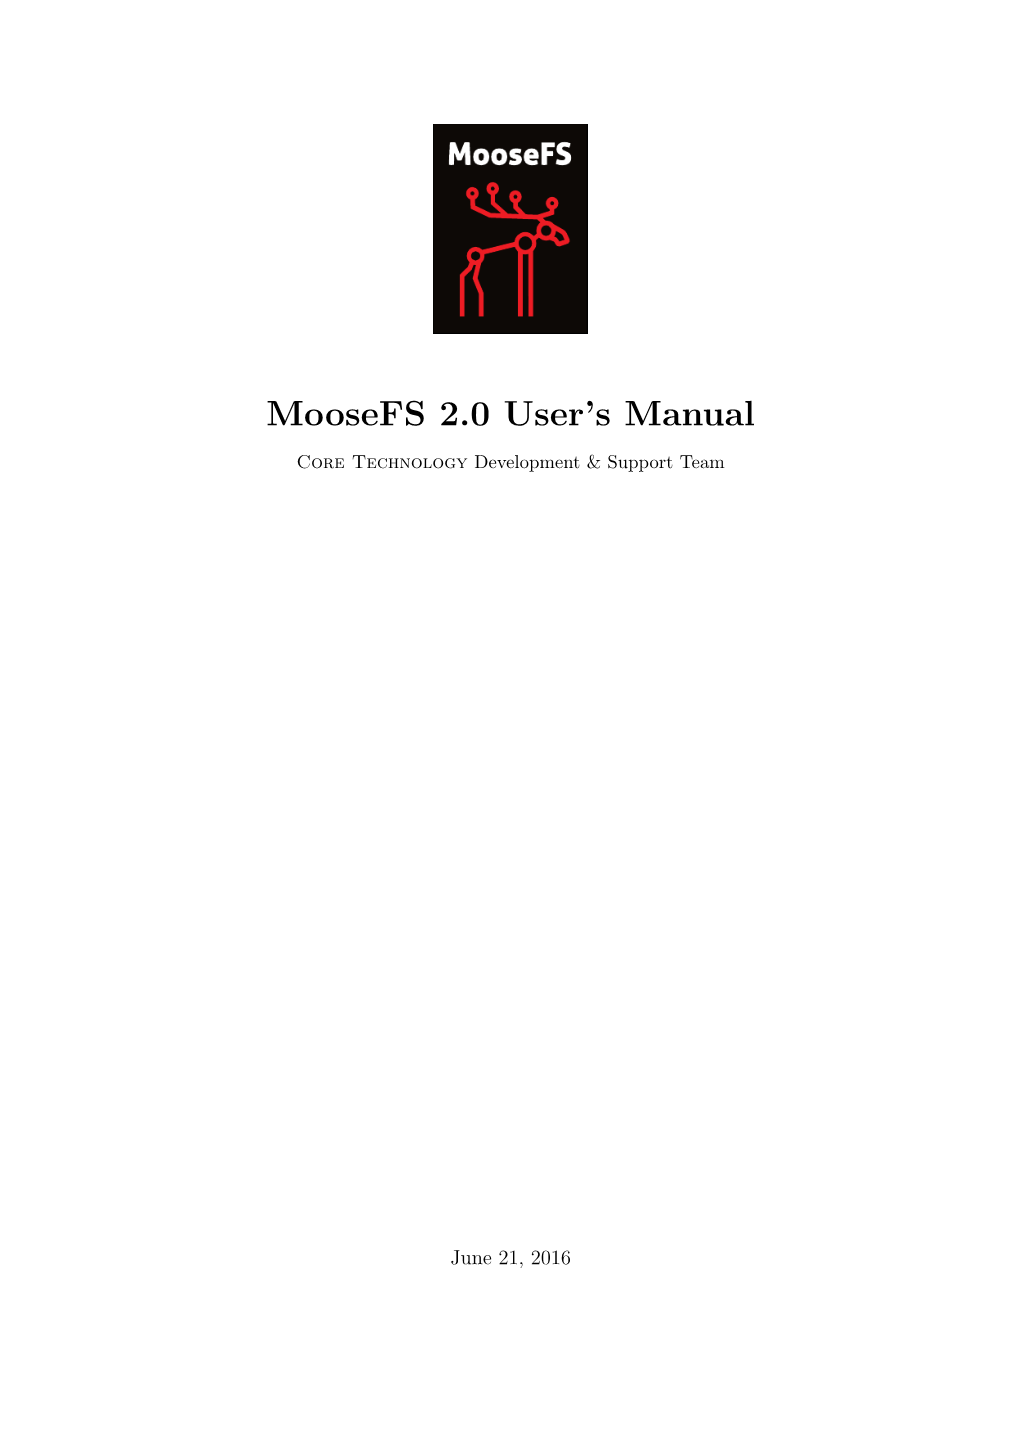 Moosefs 2.0 User's Manual